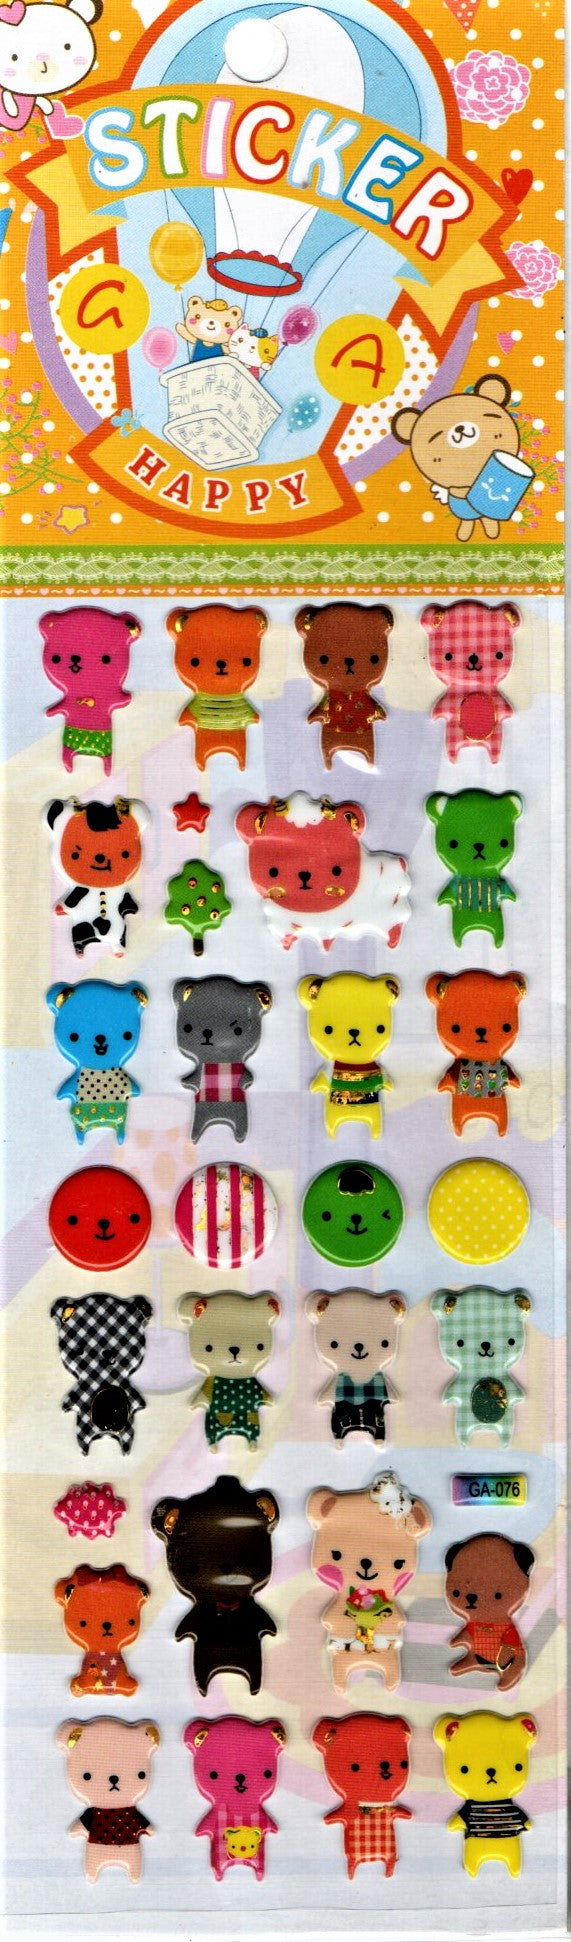 Abtibild Sticker pentru Copii Autocolant de Lipit Happy Teddy Bears Multicolor